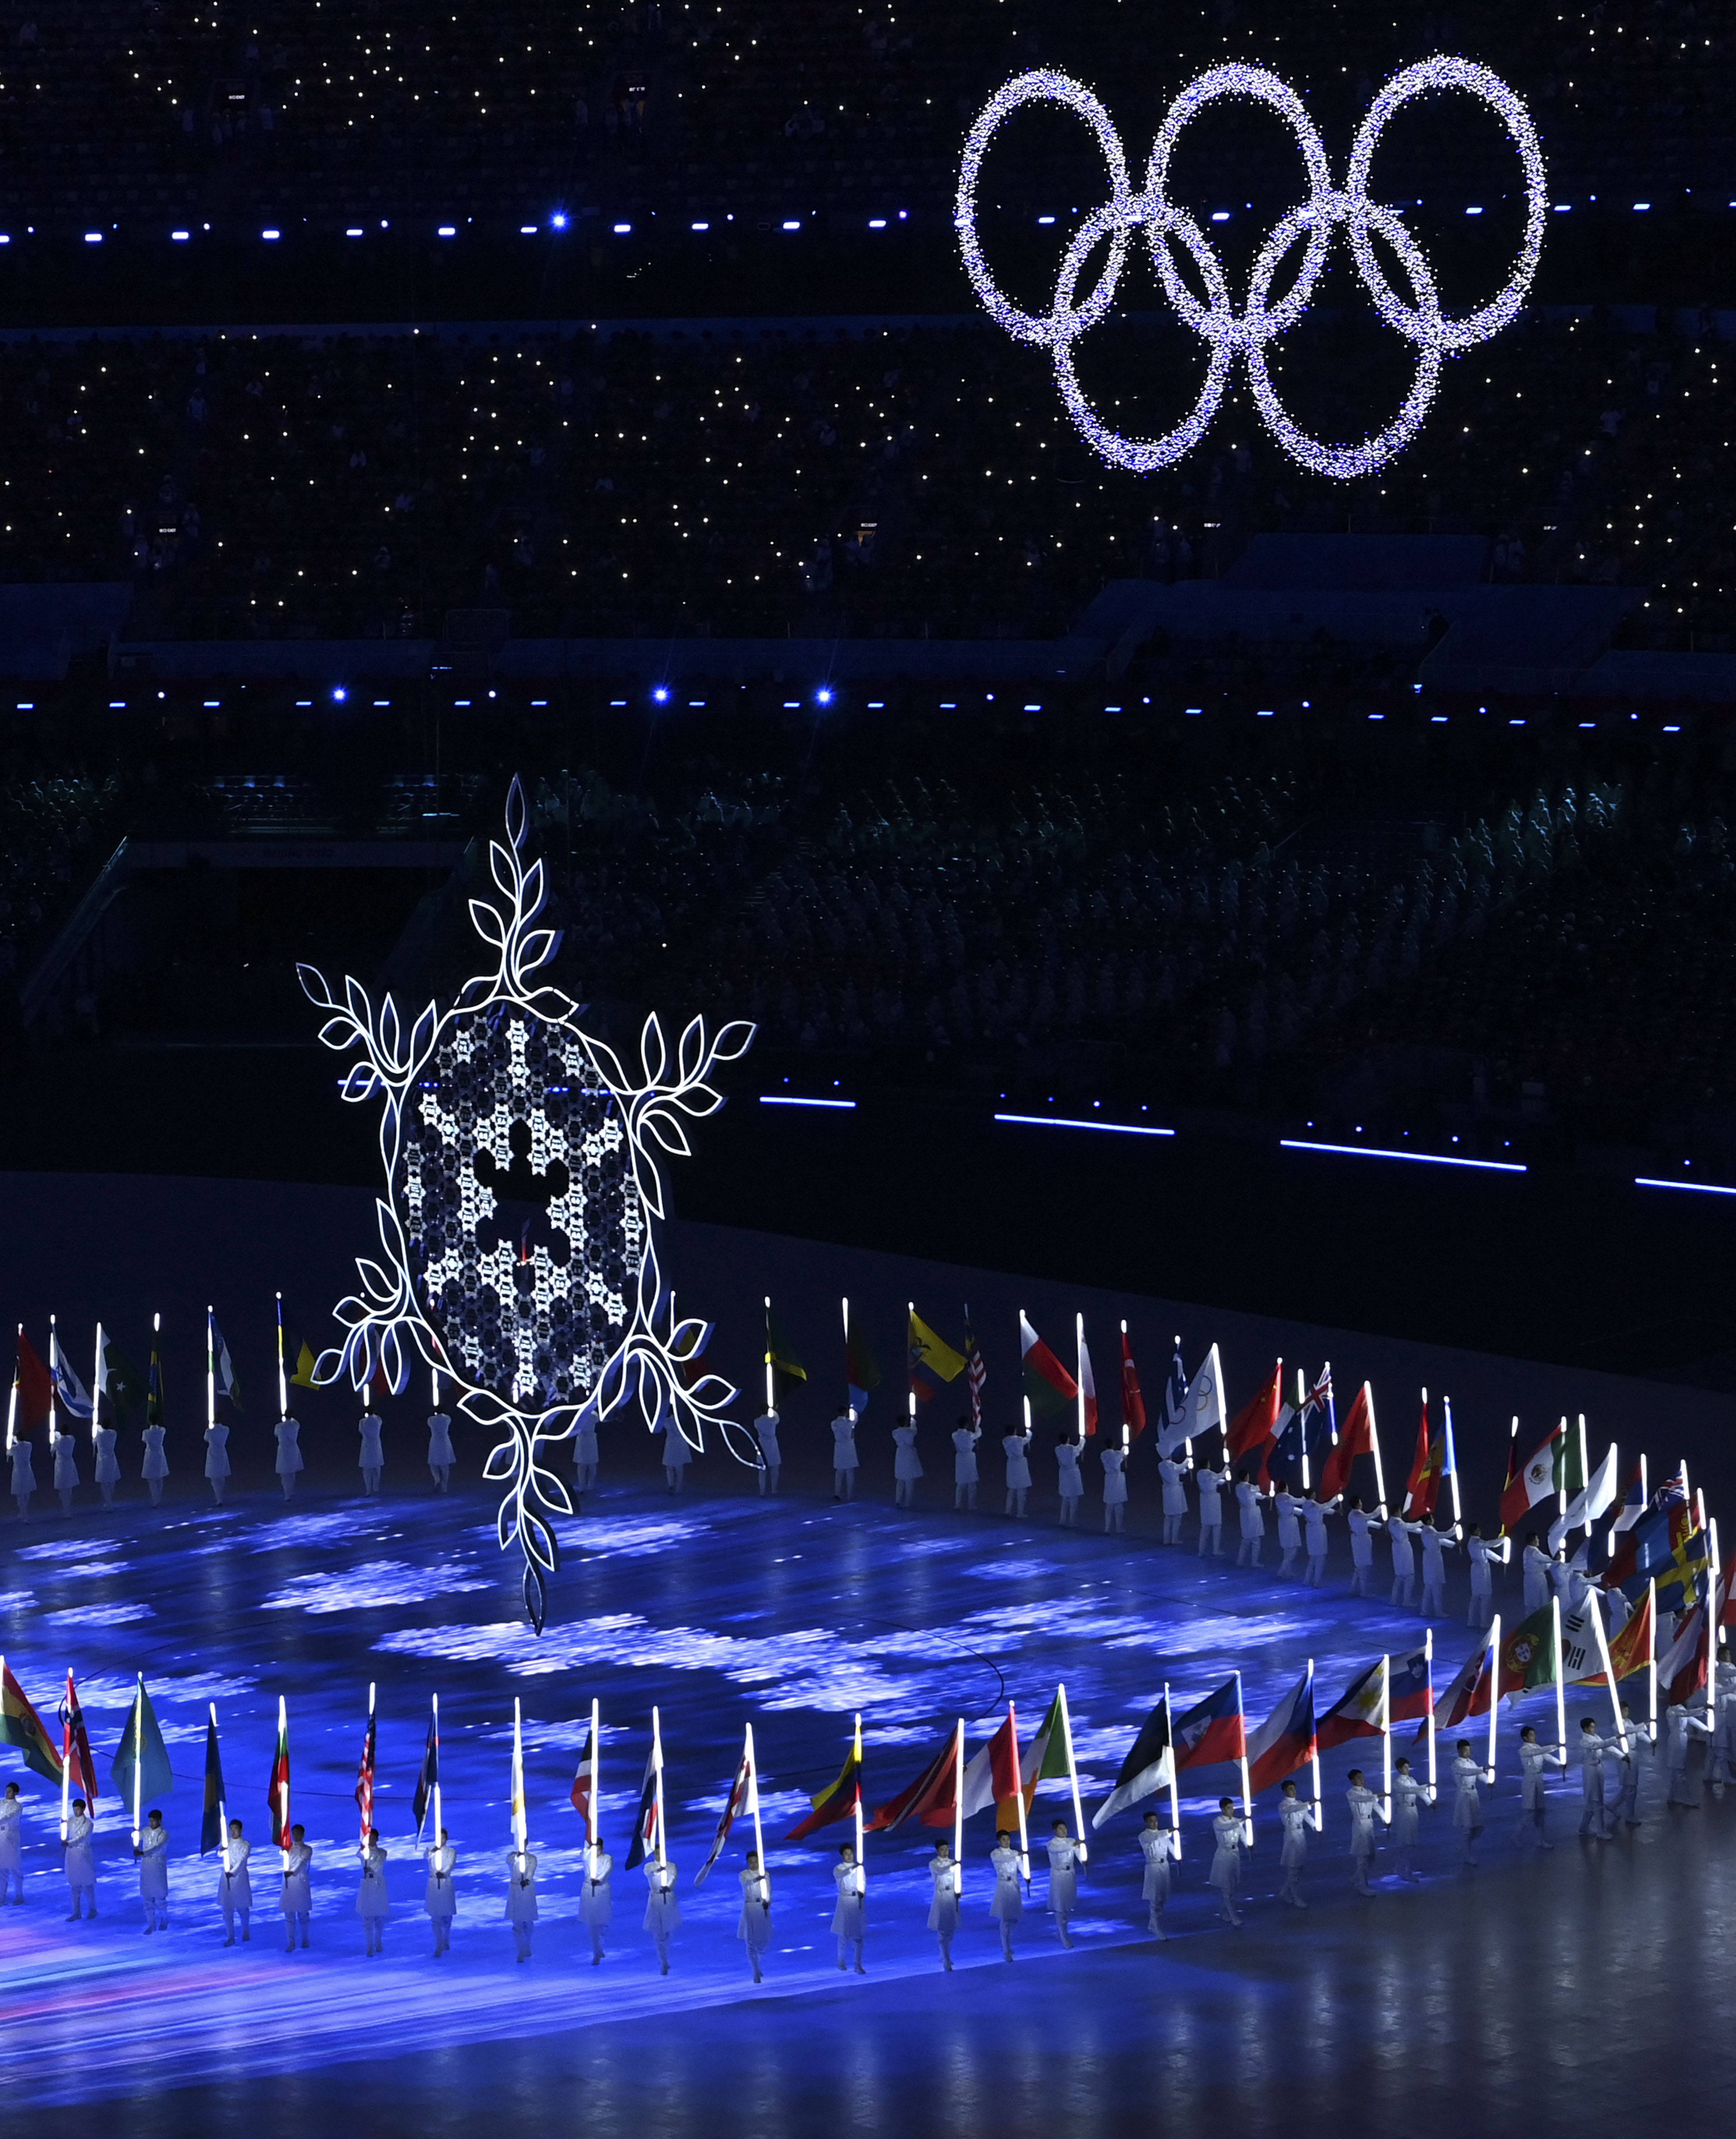 2022冬奥主火炬台图片